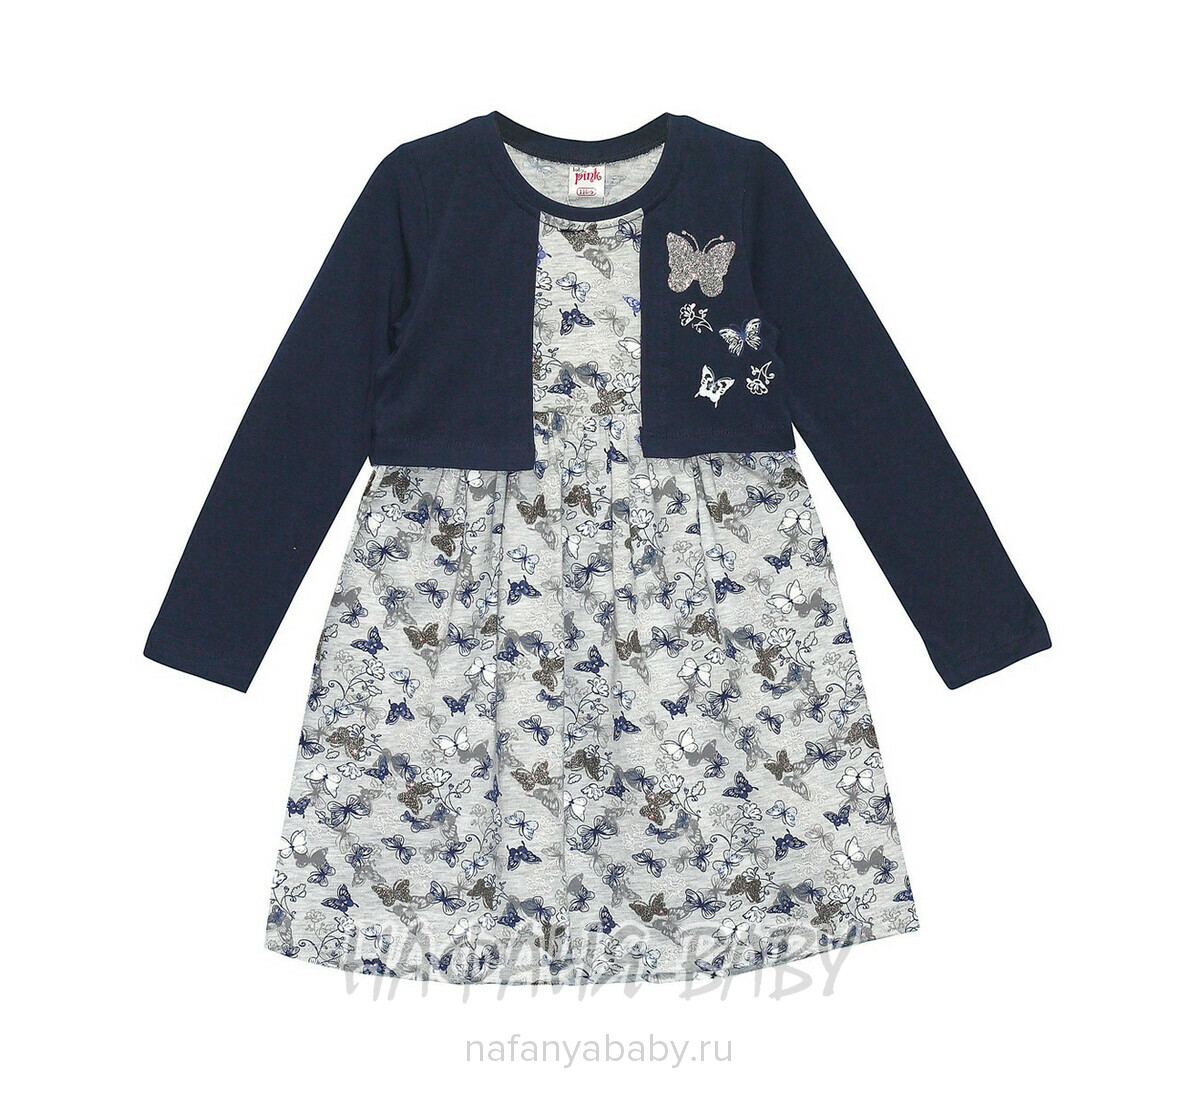 Детское трикотажное платье-болеро PINK арт: 4311, 5-9 лет, 1-4 года, цвет серый меланж, оптом Турция